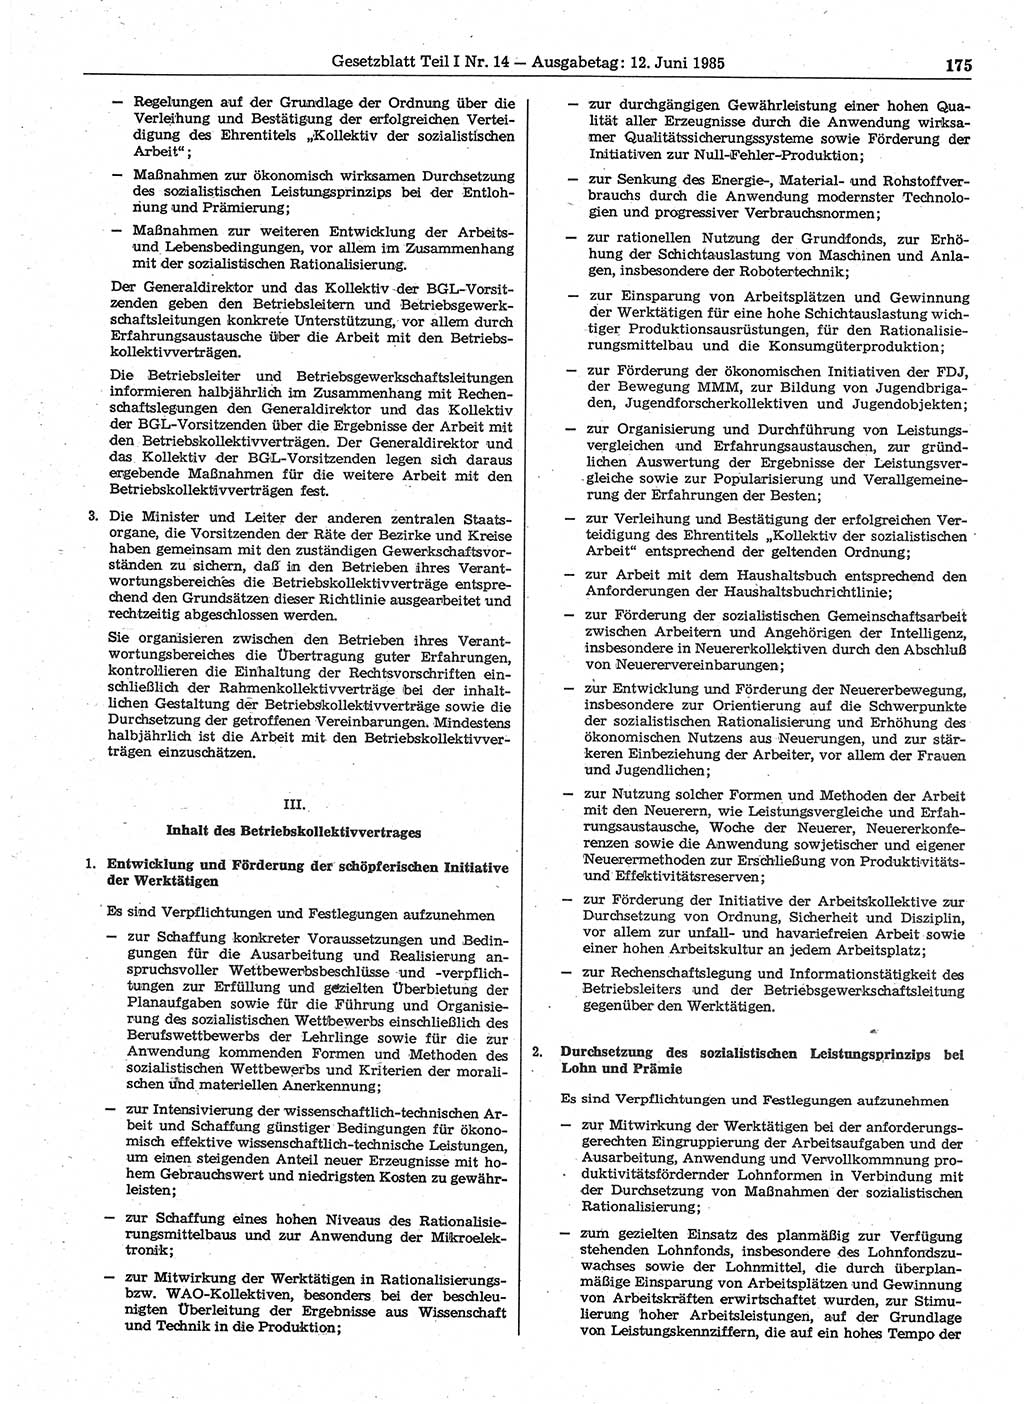 Gesetzblatt (GBl.) der Deutschen Demokratischen Republik (DDR) Teil Ⅰ 1985, Seite 175 (GBl. DDR Ⅰ 1985, S. 175)